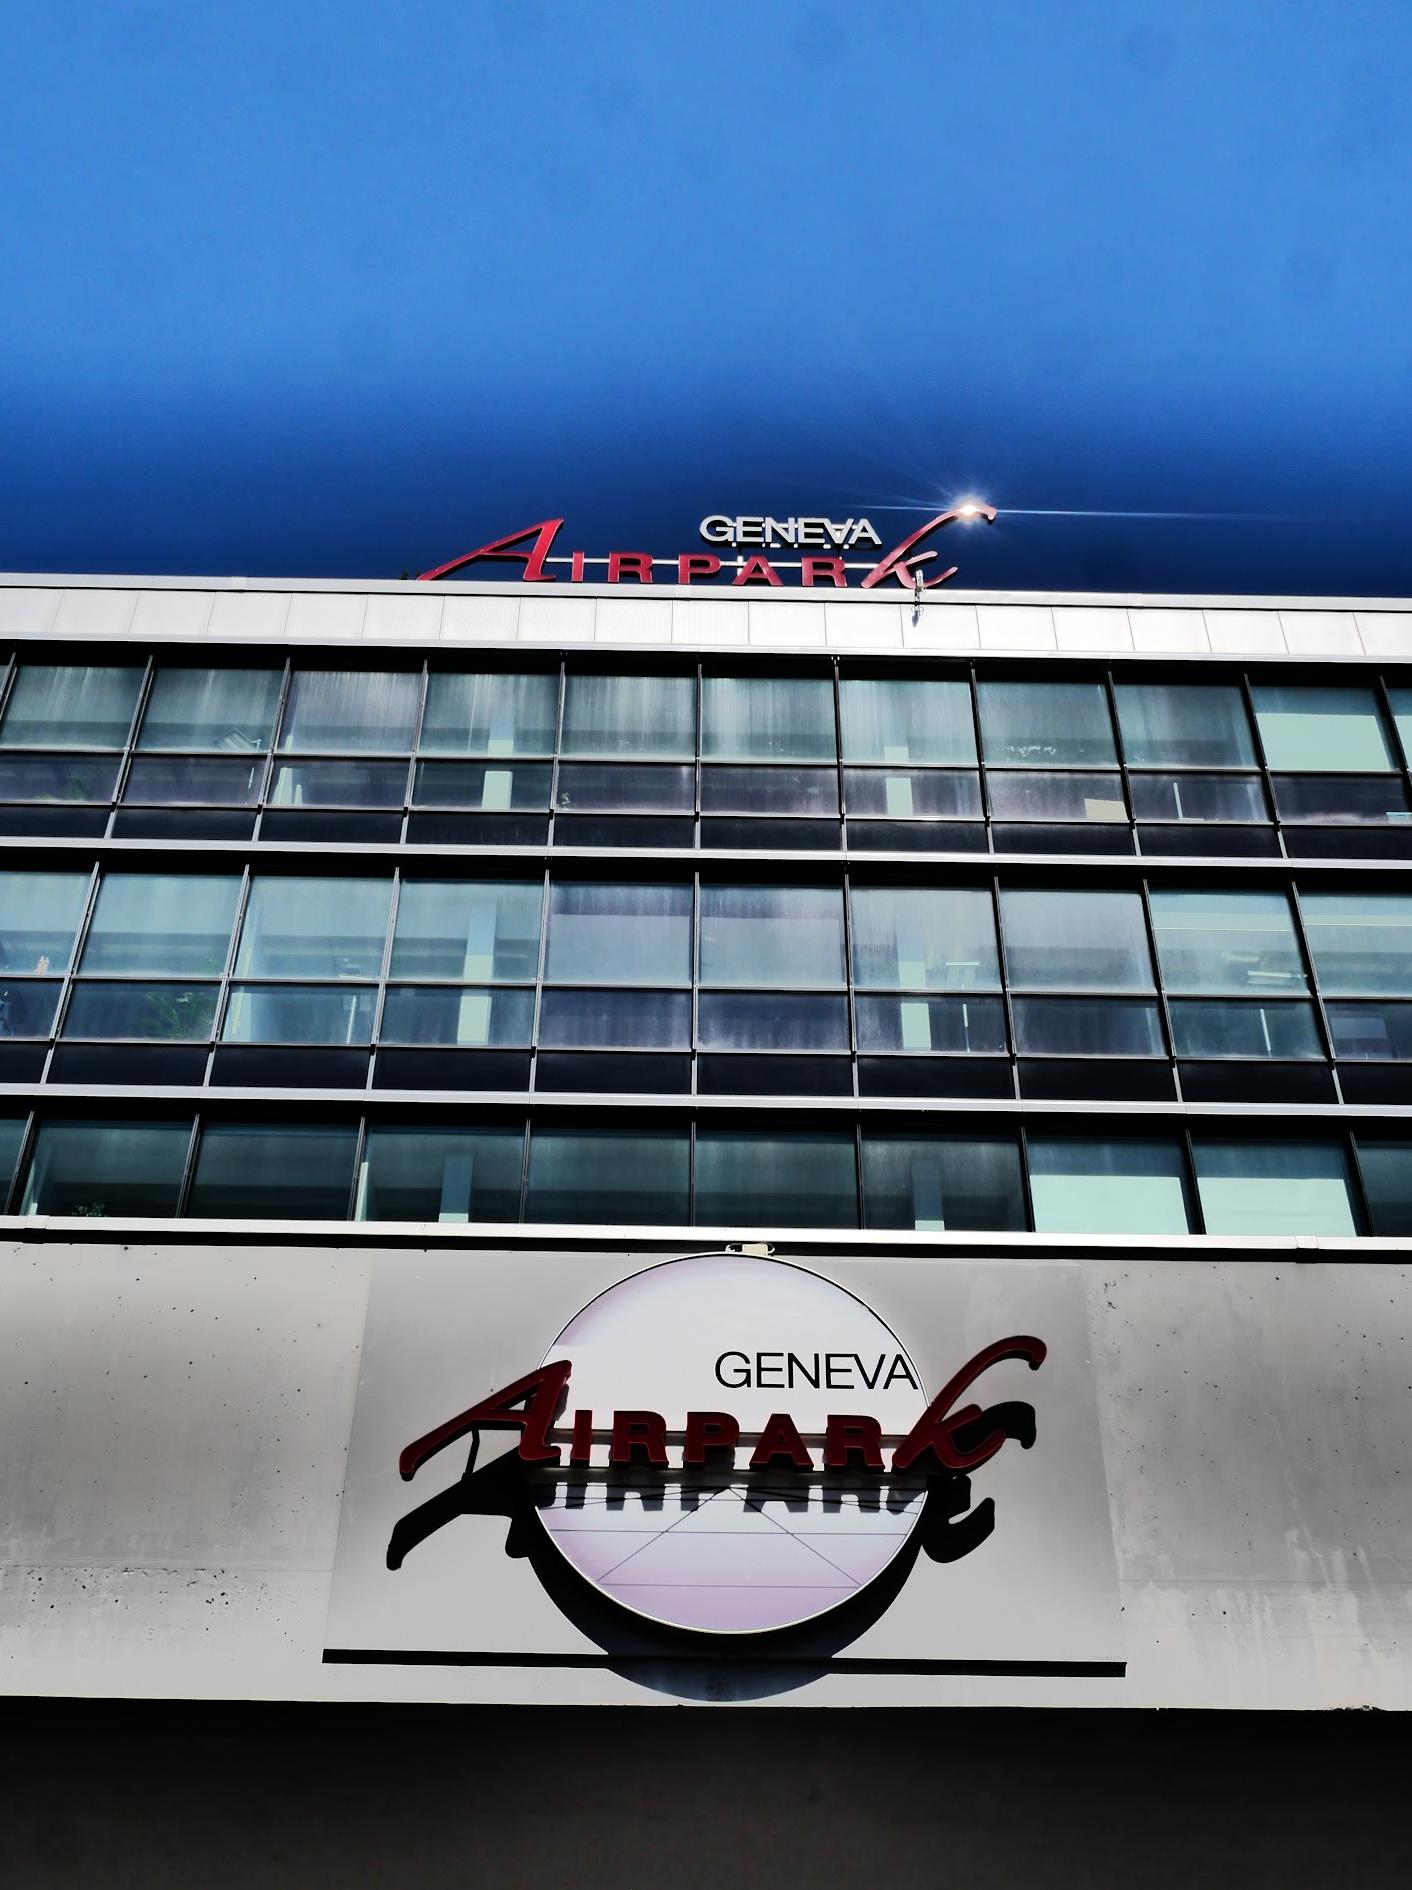 Aeroparque de Ginebra